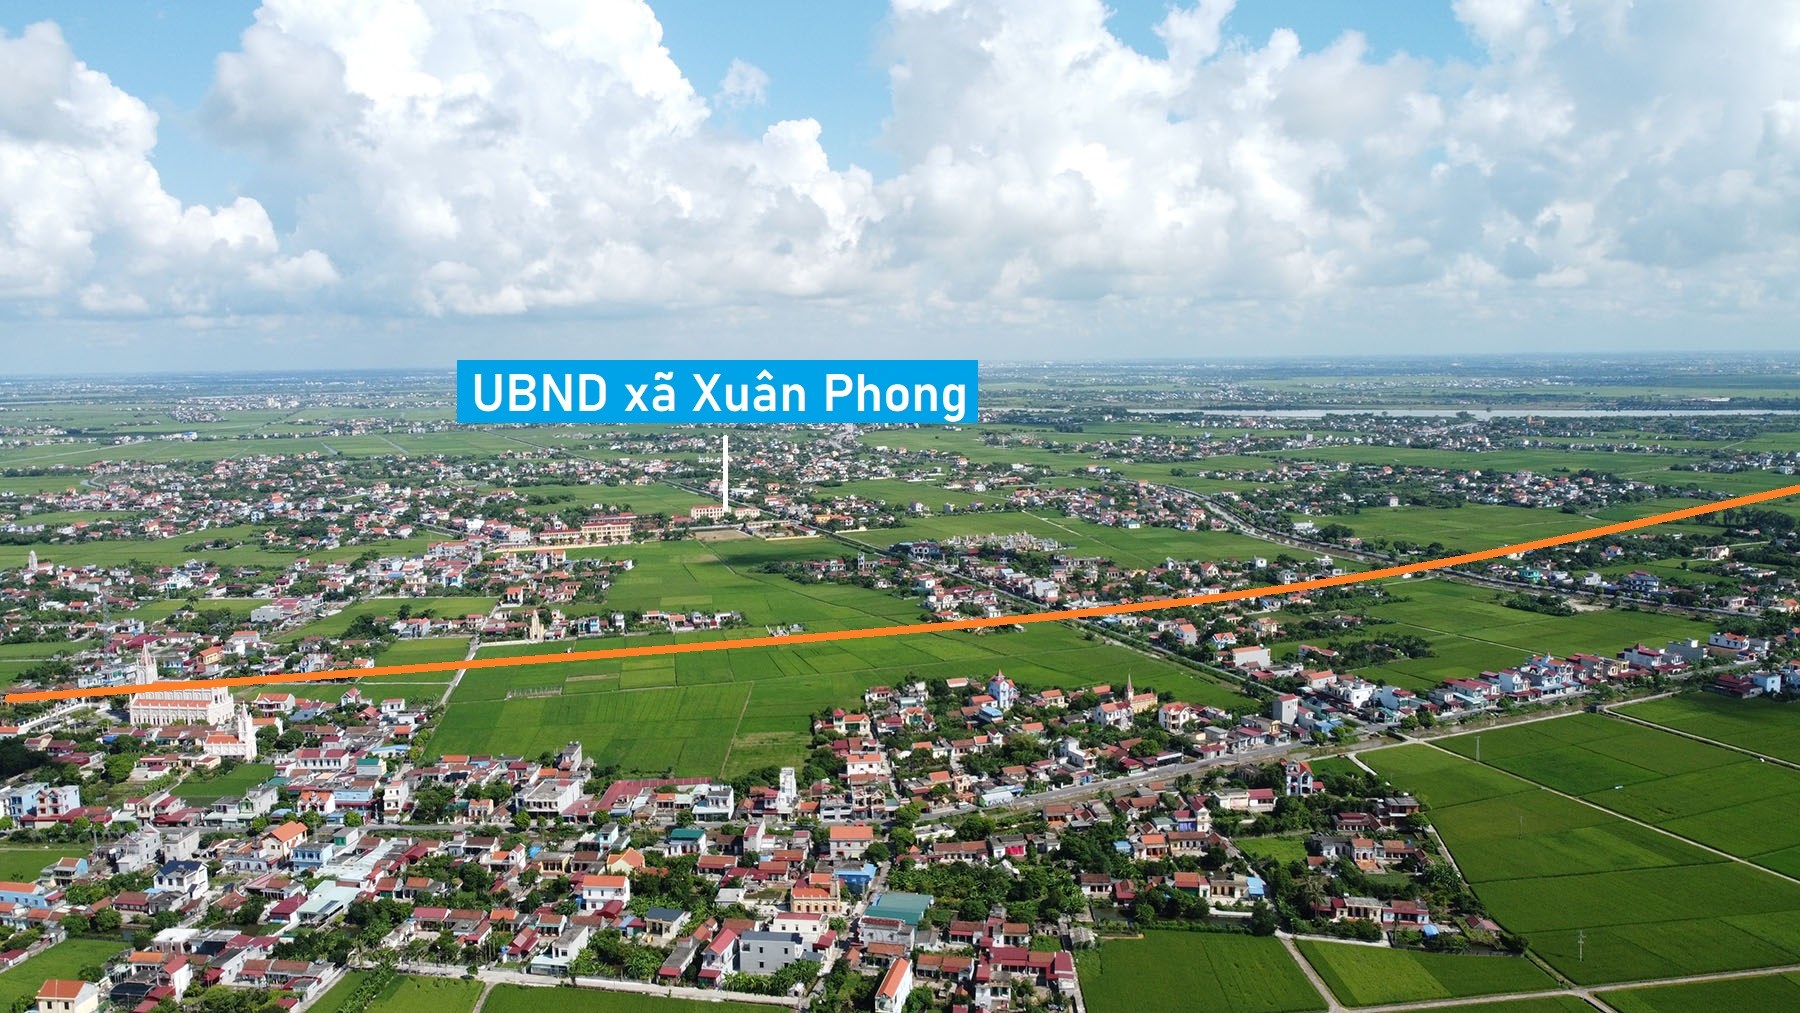 Toàn cảnh vị trí dự kiến mở cao tốc Ninh Bình - Nam Định - Thái Bình - Hải Phòng qua huyện Xuân Trường